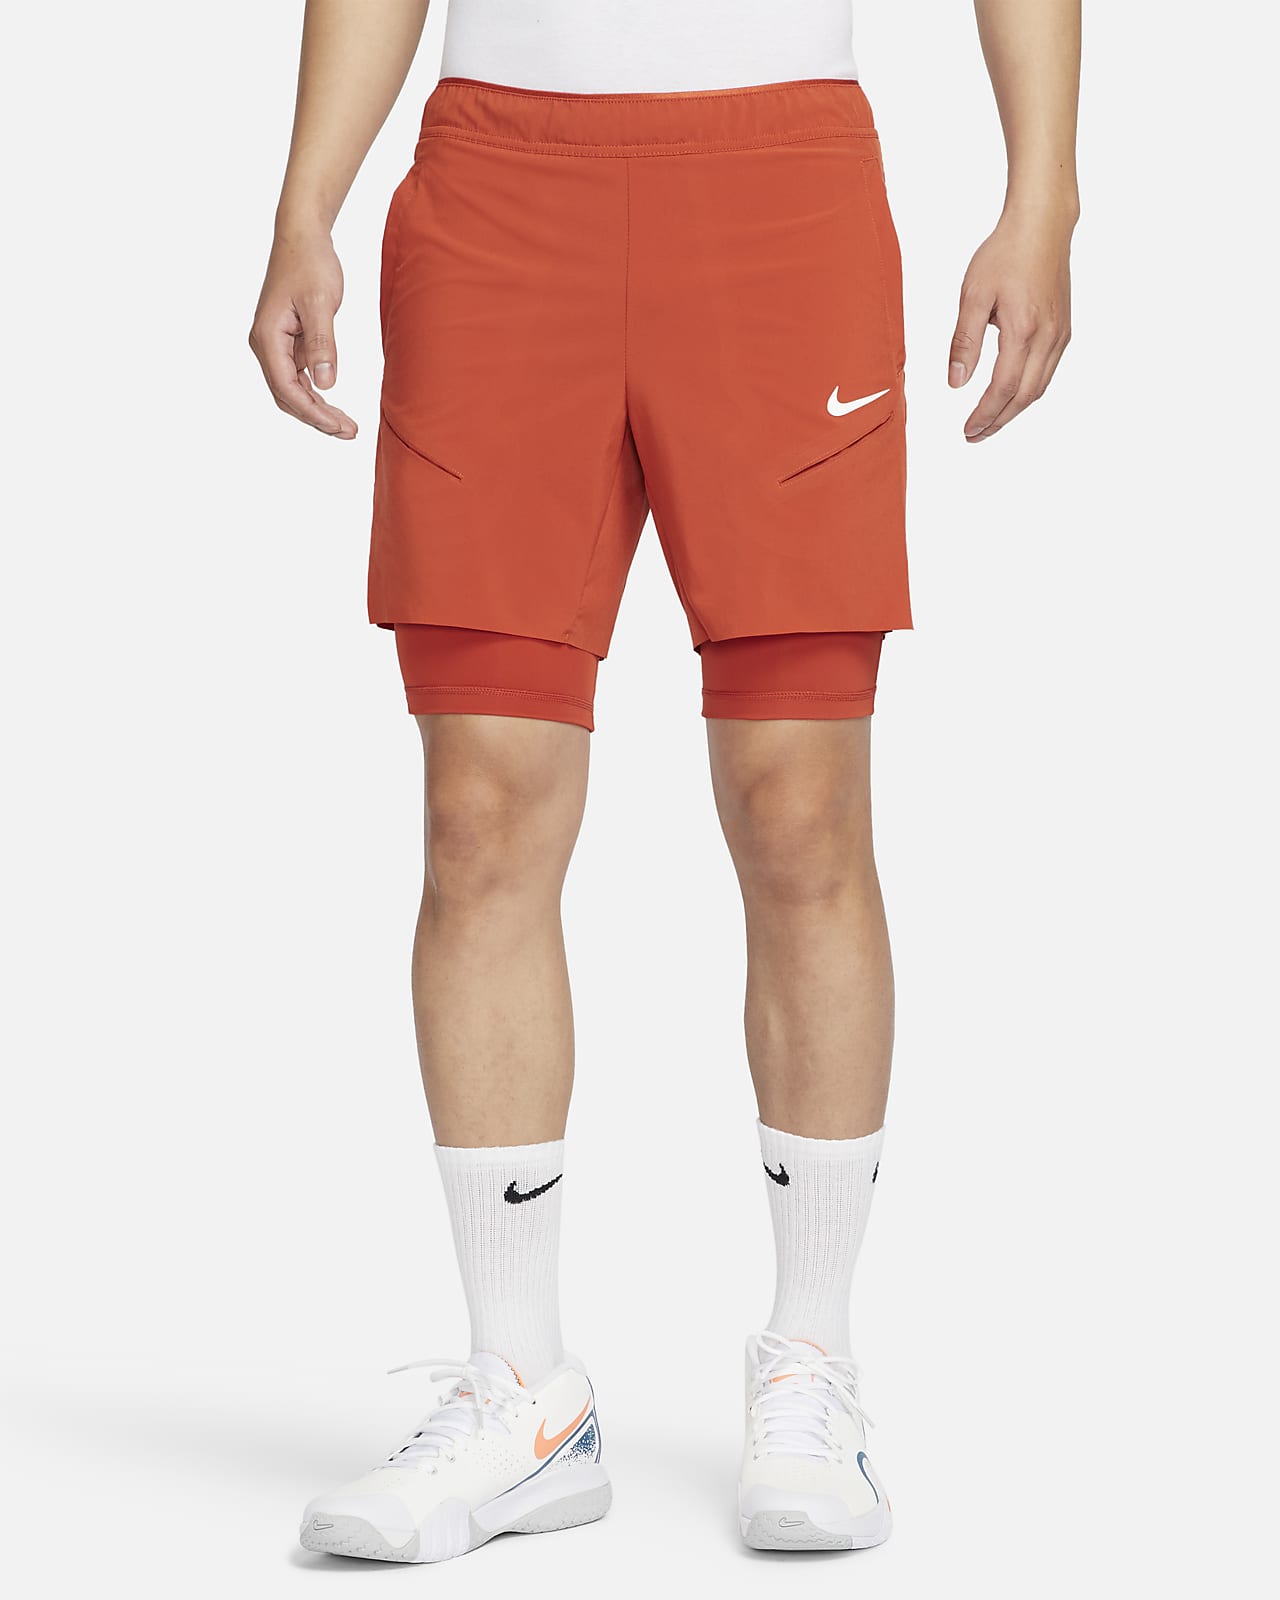 【ナイキ公式】コート スラム メンズ Dri-FIT テニスショートパンツ オレンジ メンズ M NikeCourt Slam Men's Dri-FIT Tennis Shorts